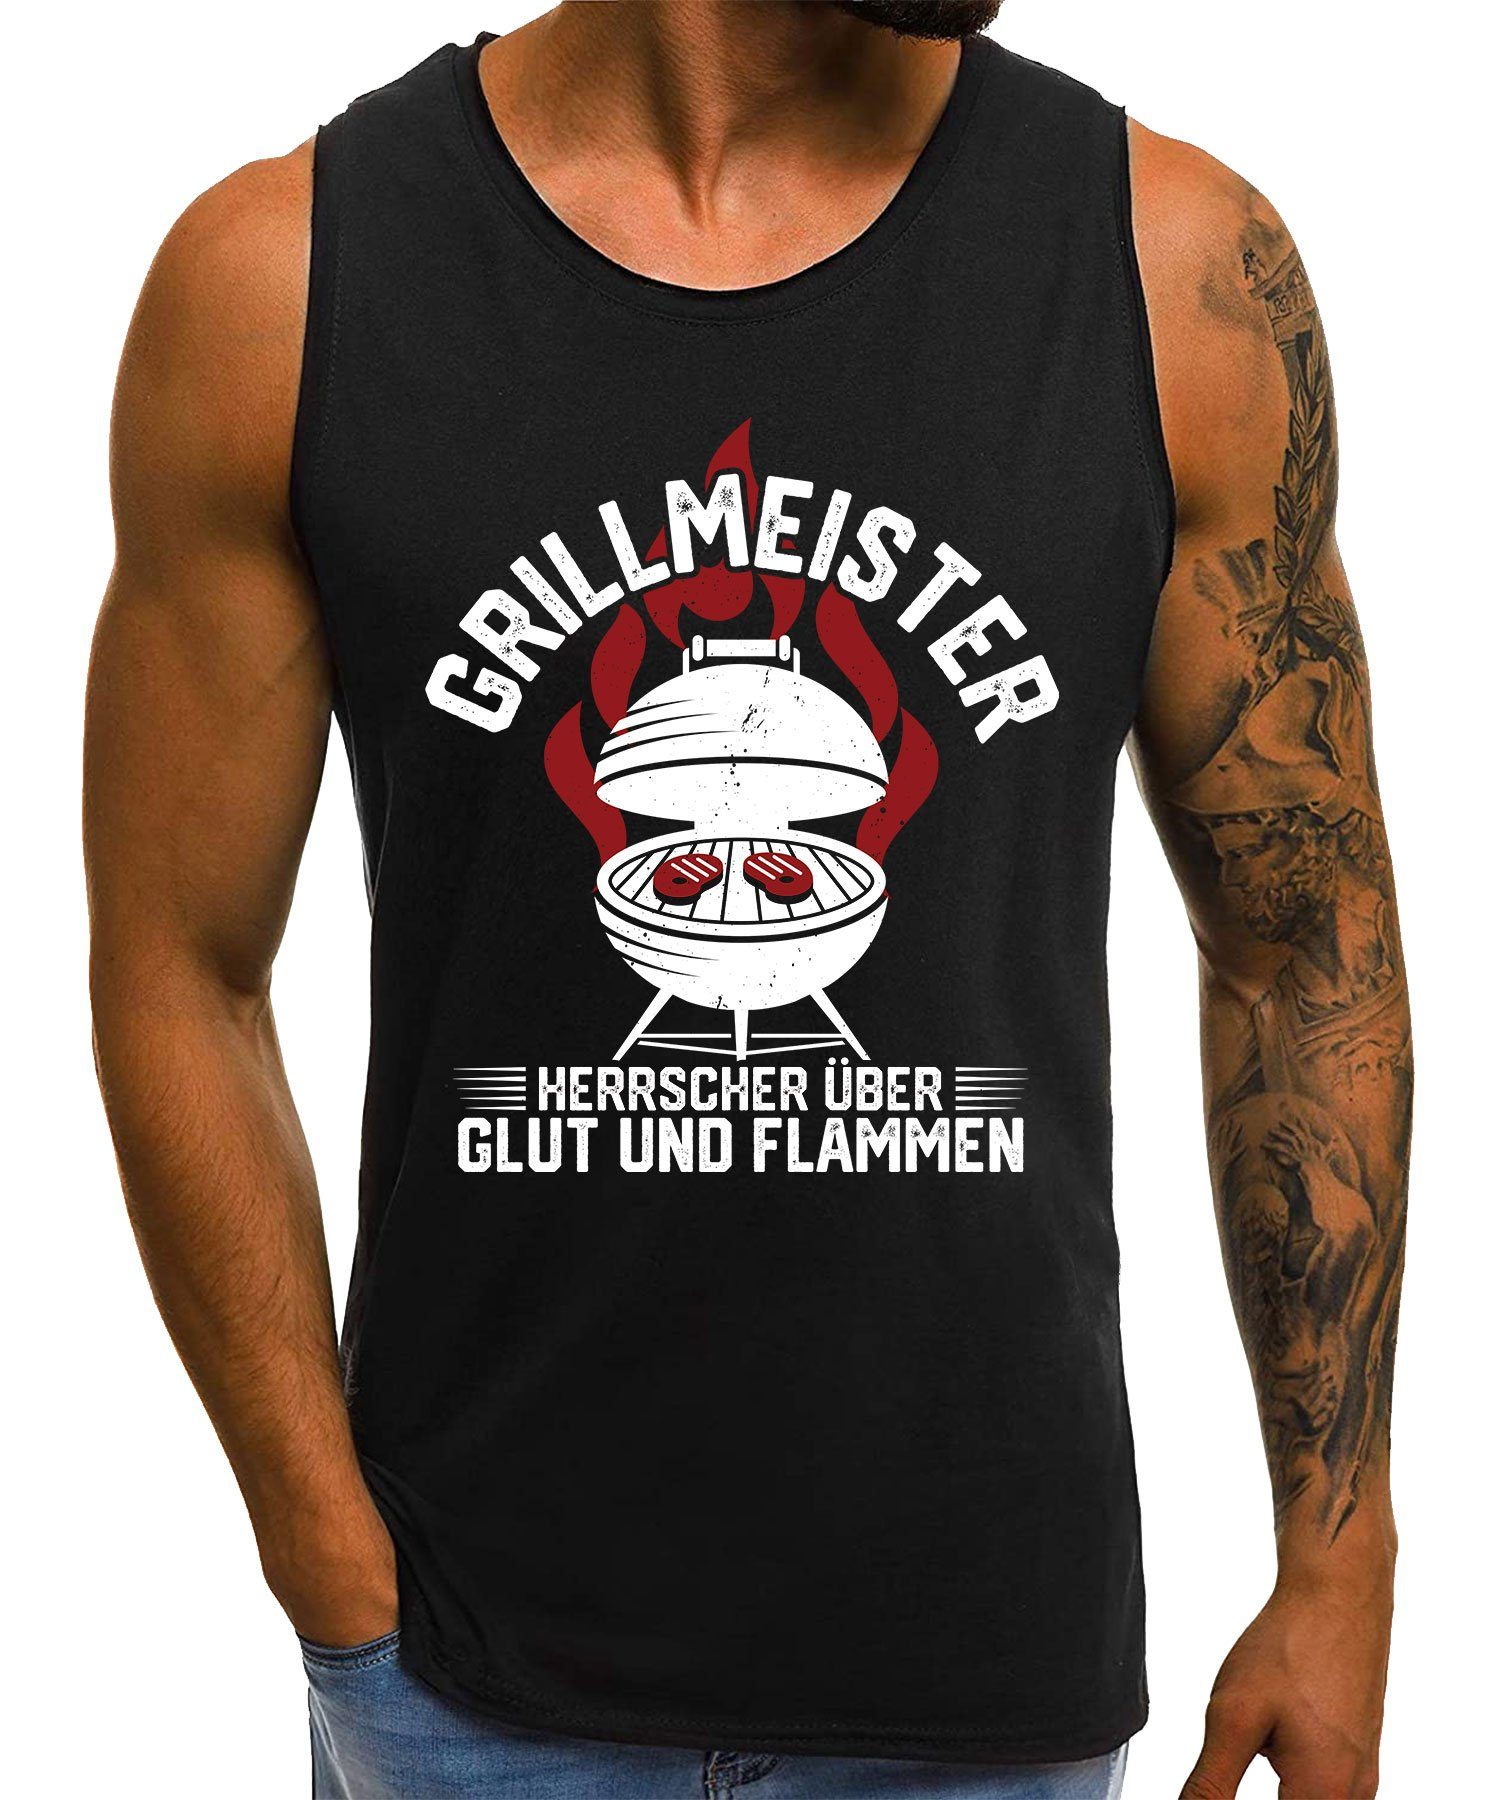 Quattro Formatee Achselhemd Grillmeister Grillen Glut Flammen - Lustiger Spruch Statement Herren (1-St) | Unterhemden